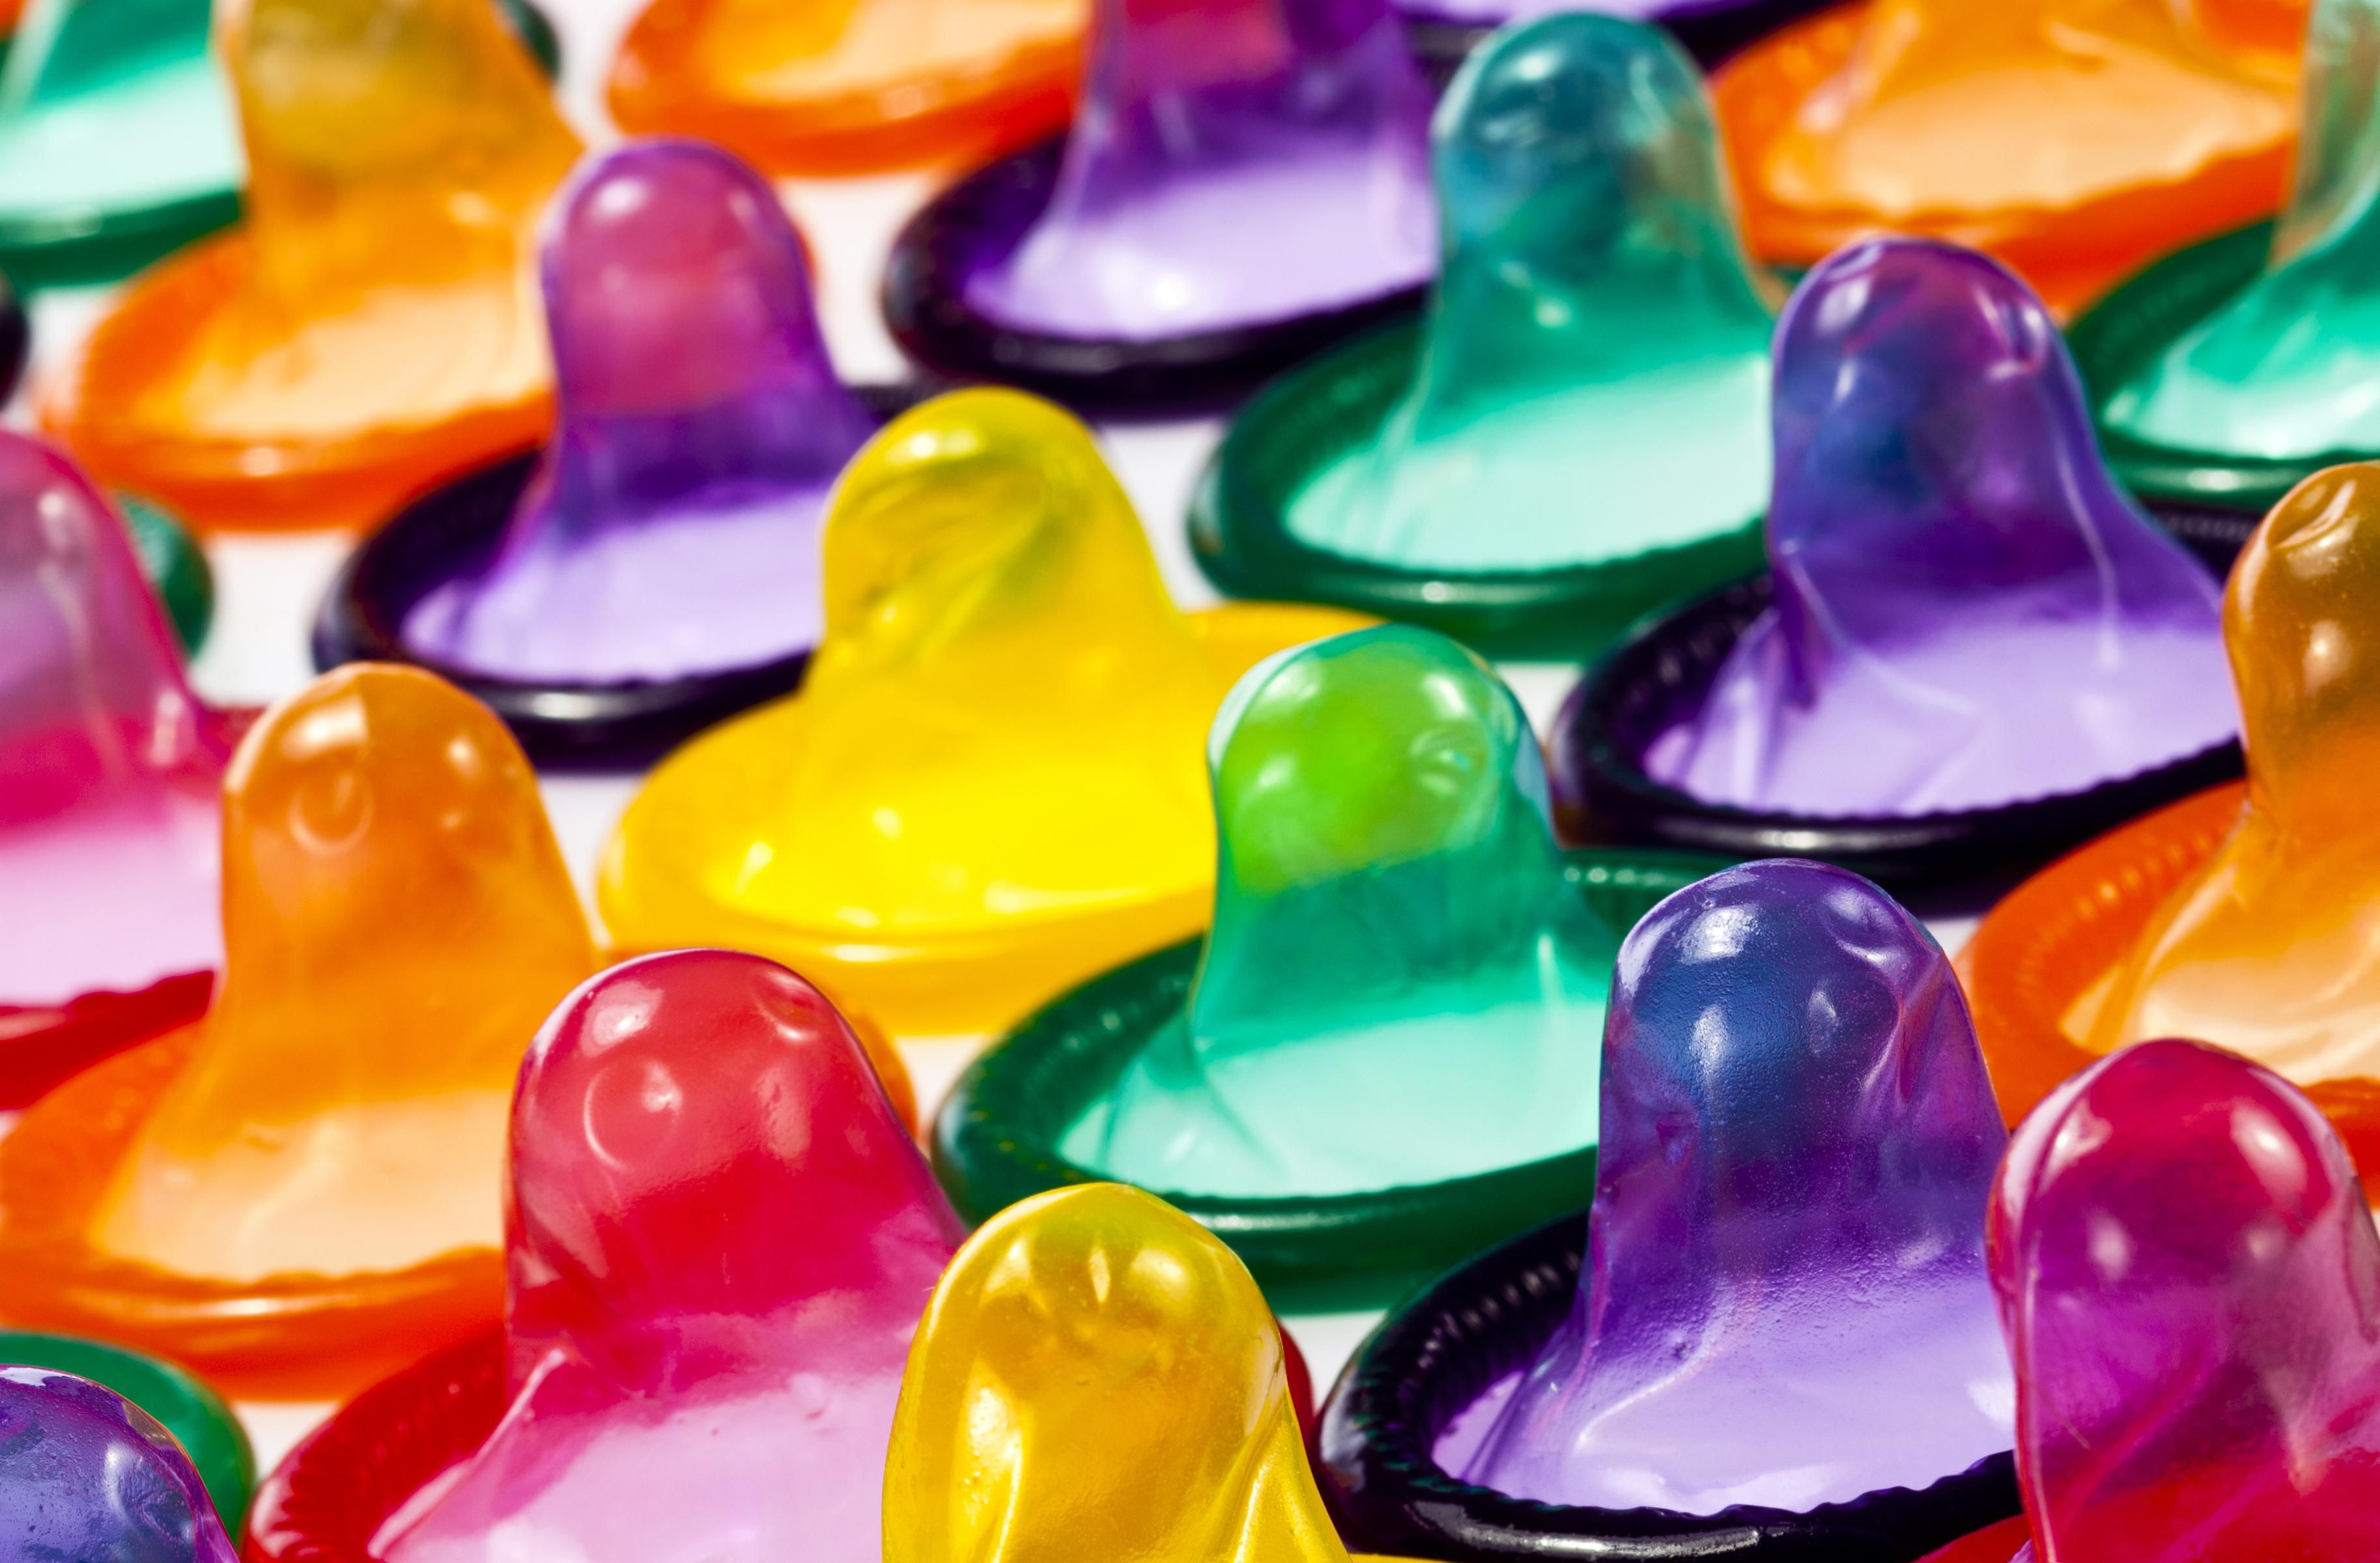 Parlak renklerde prezervatif düzenlenmesi